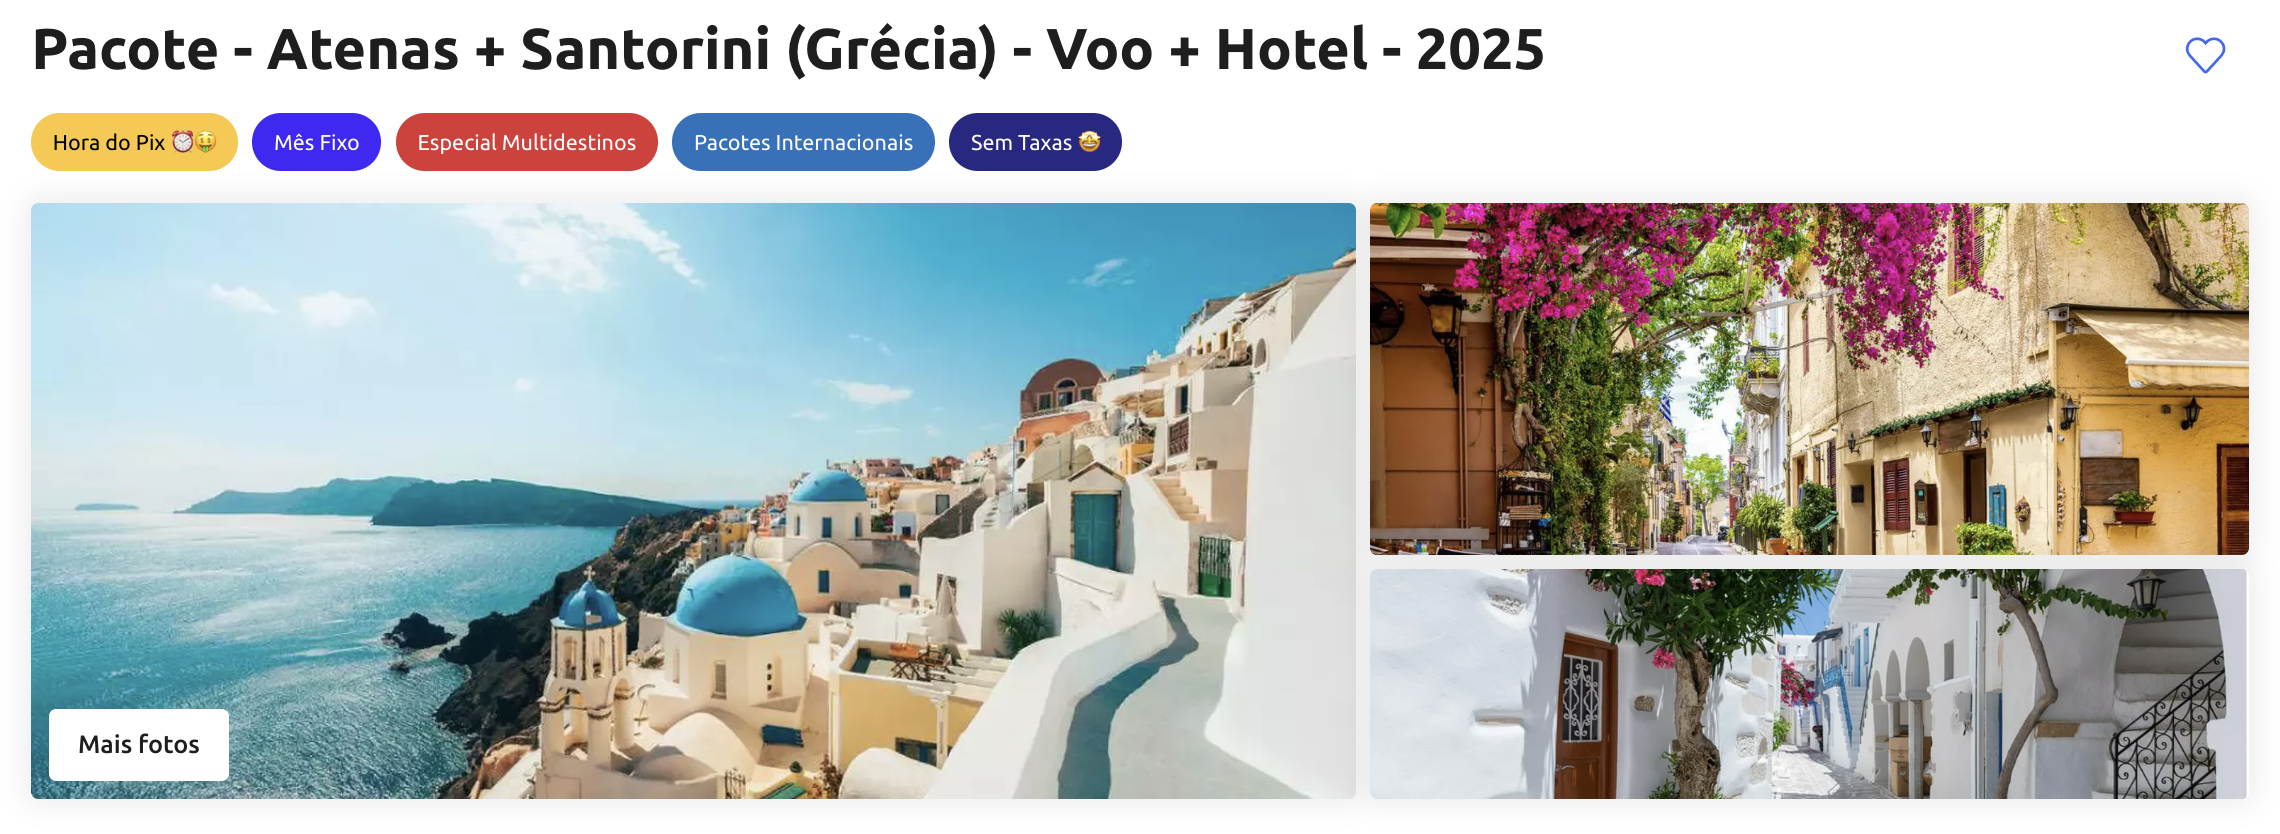 Pacote - Atenas + Santorini (Grécia) - Voo + Hotel - 2025